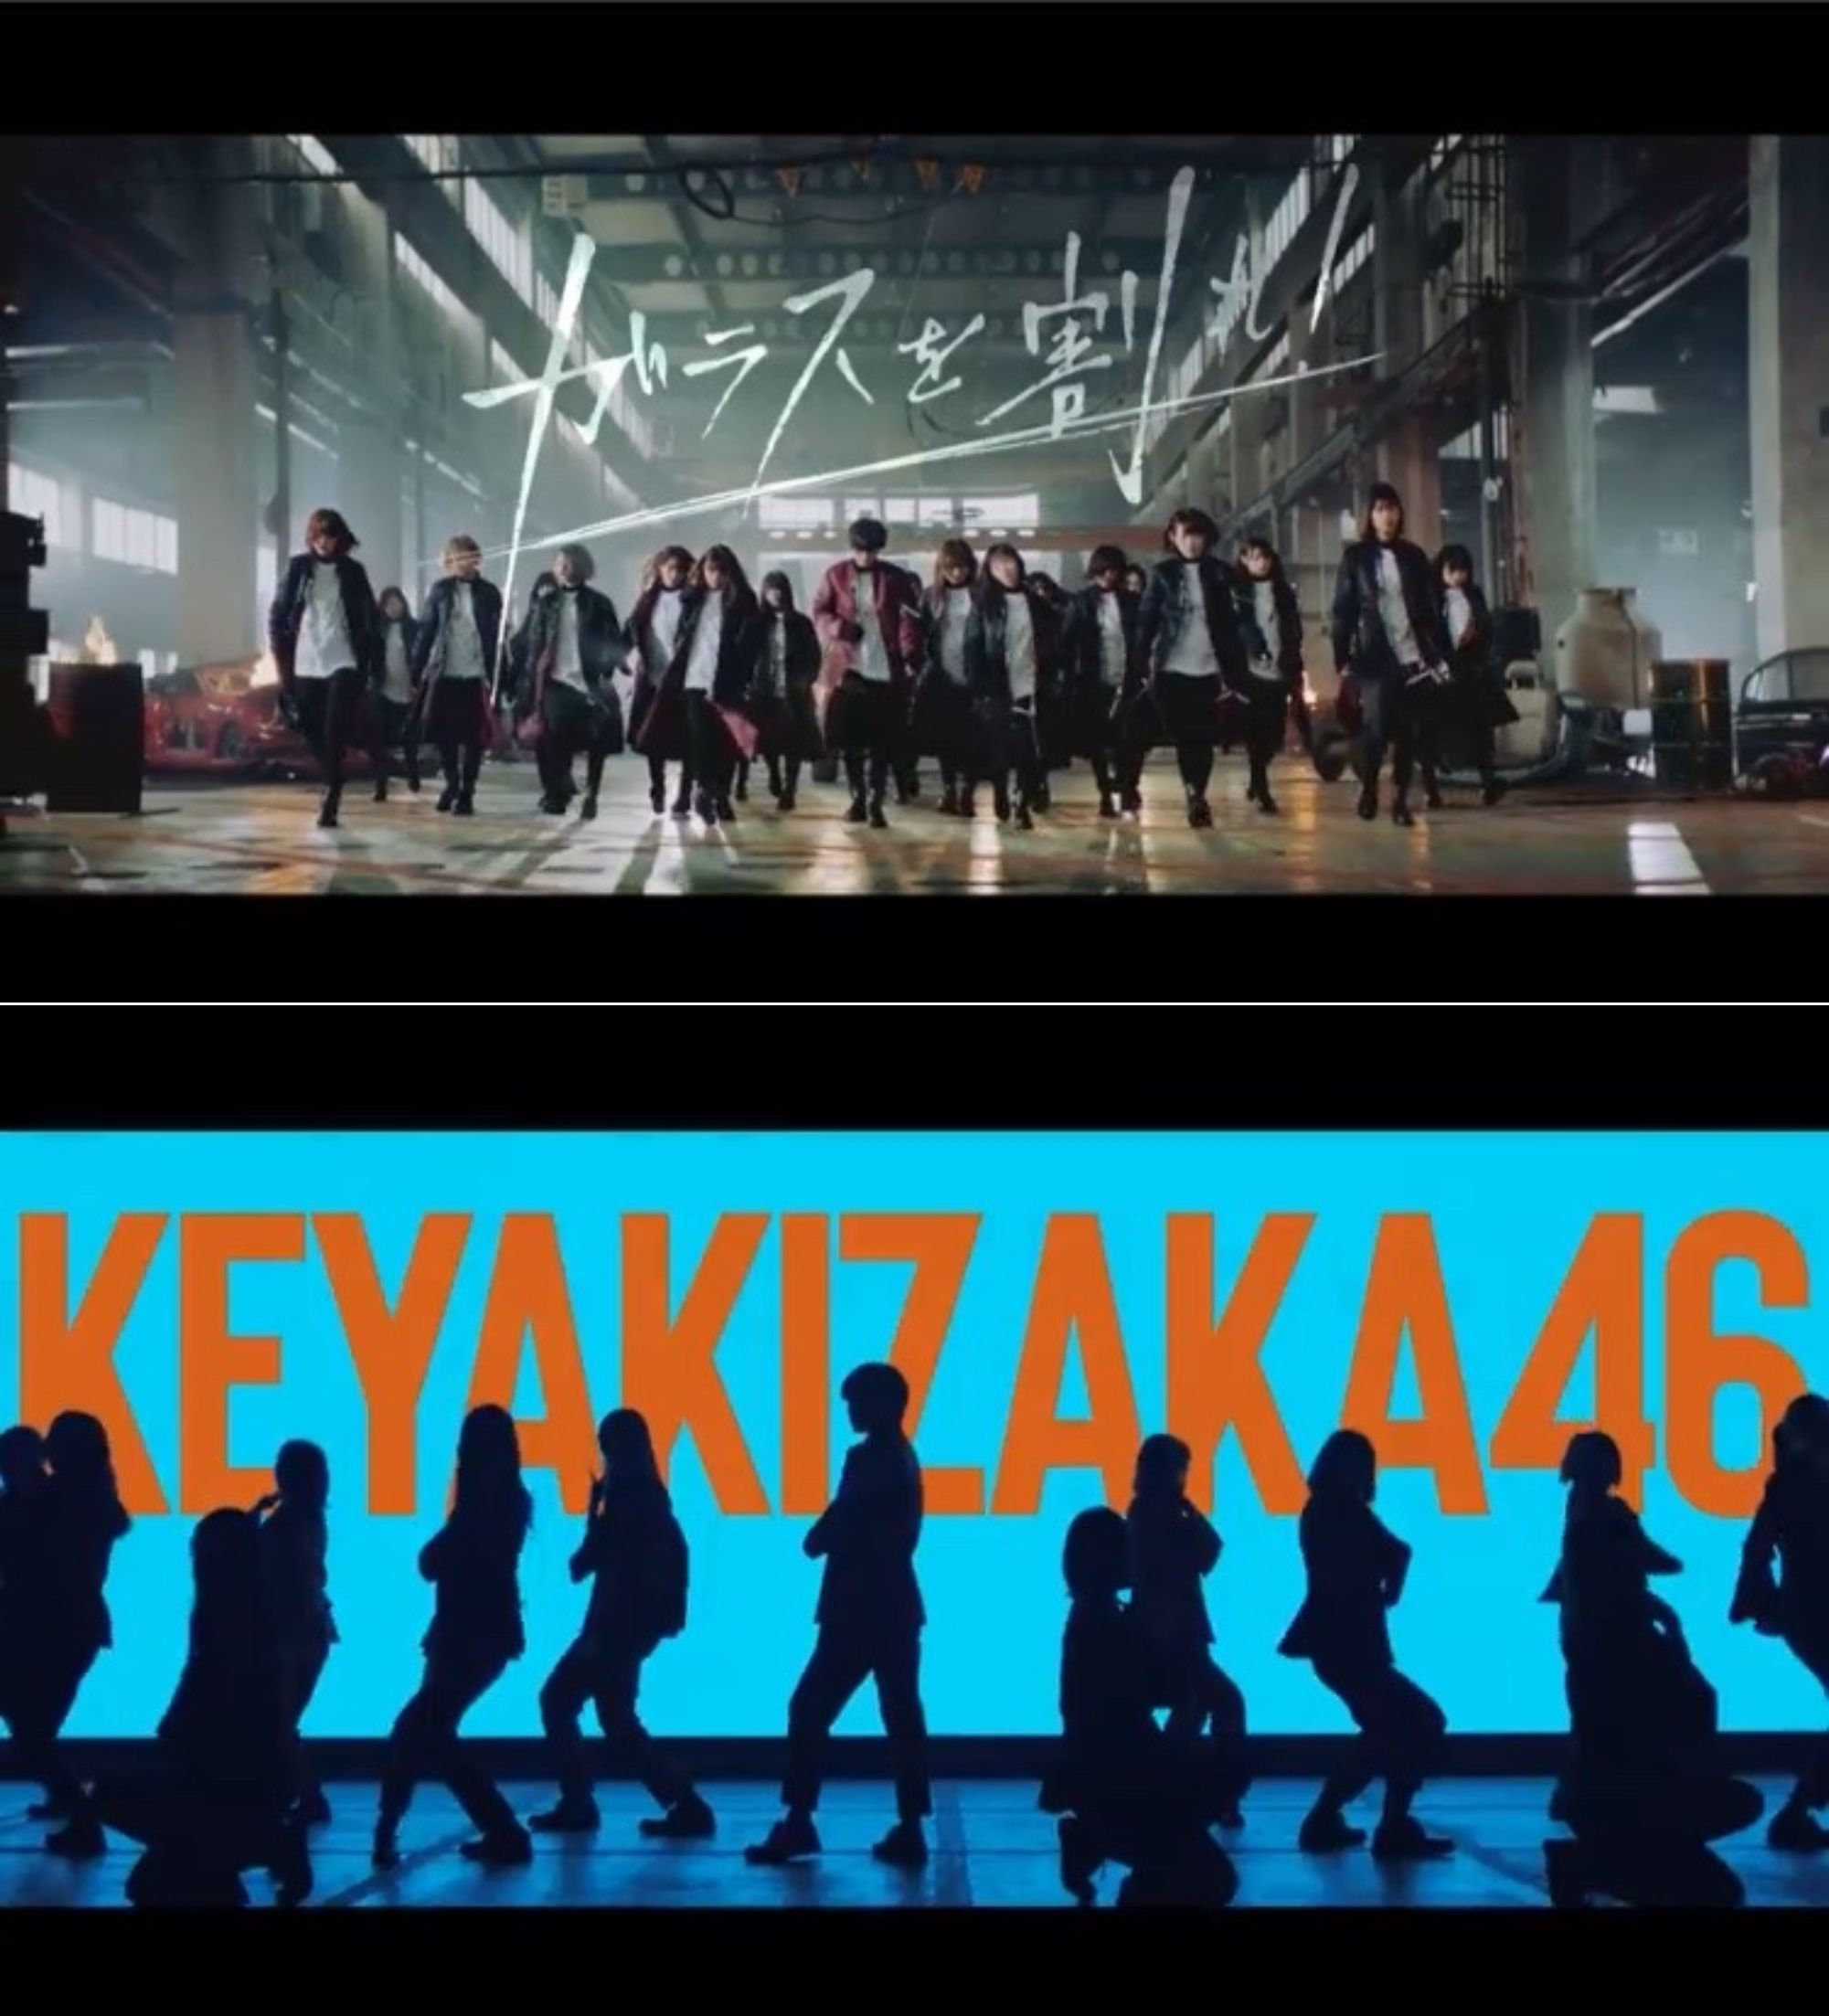 欅坂46の楽曲は毎回MVによって飛躍的に魅力を増してきた。カップリング曲も含め一気見したい！／欅坂46公式YouTube「ガラスを割れ」（上）、「Nobody」（下）MVより